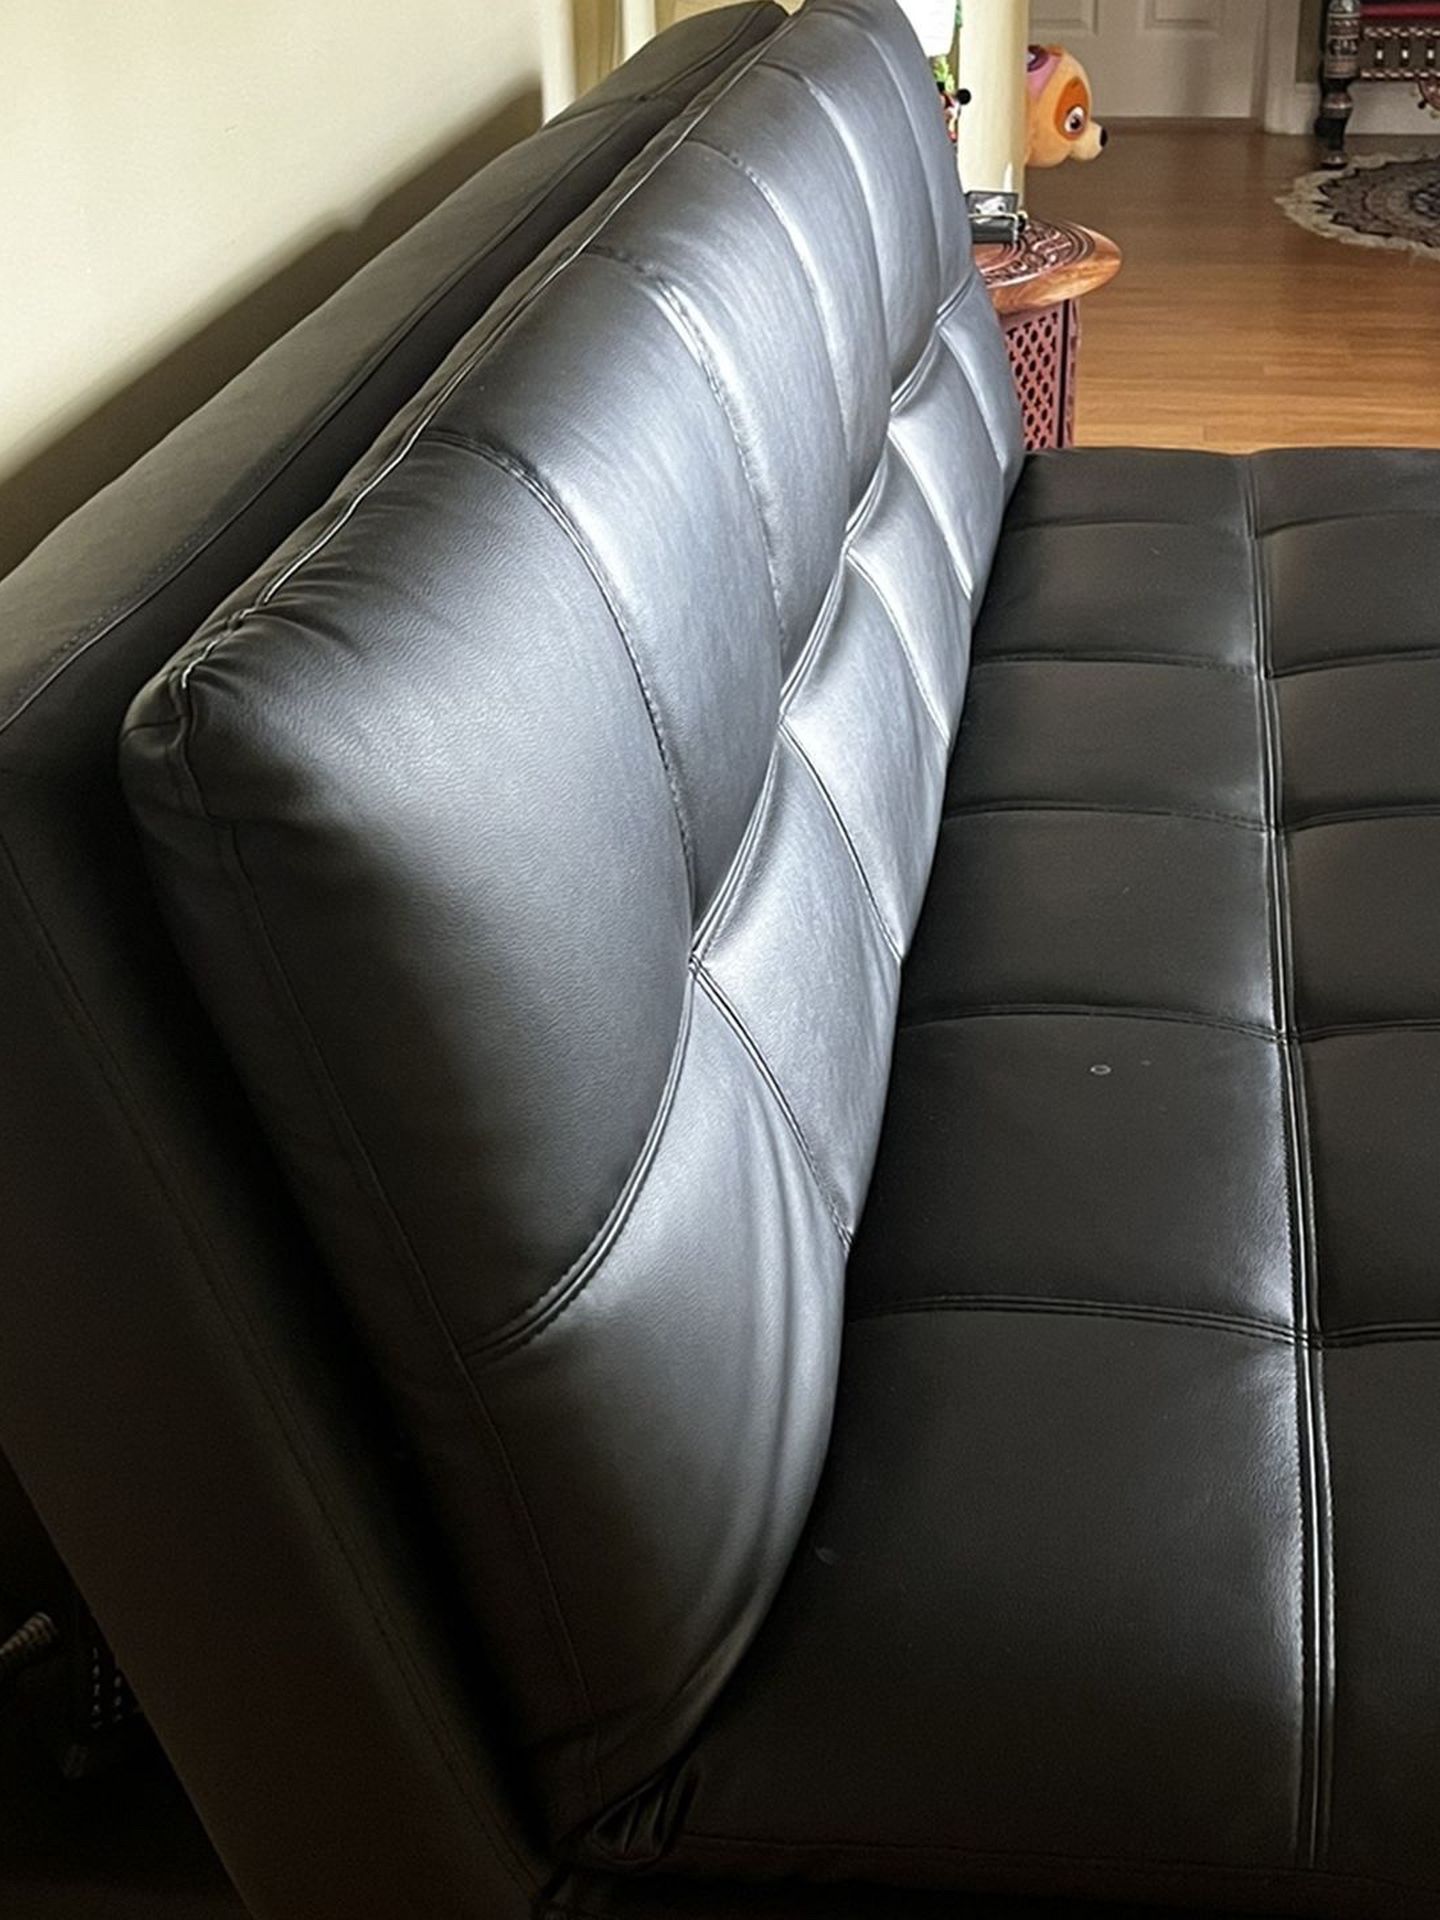 Futon Sofa 